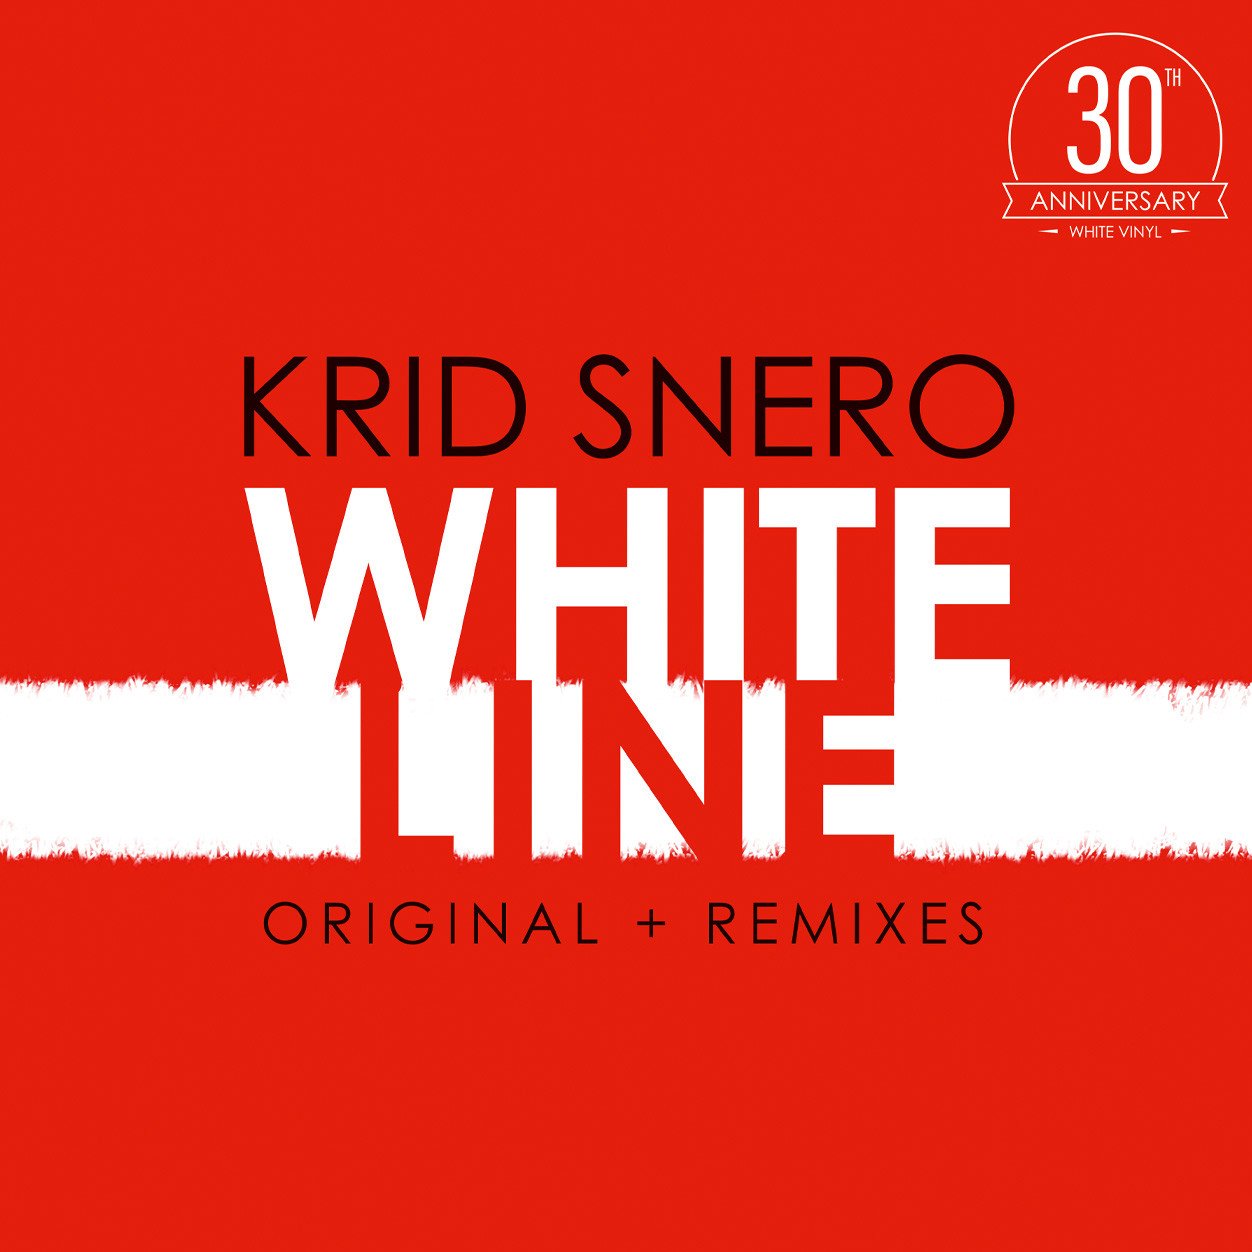 Krid Snero - White Line (White vinyl) - 30th anniversary (MV)